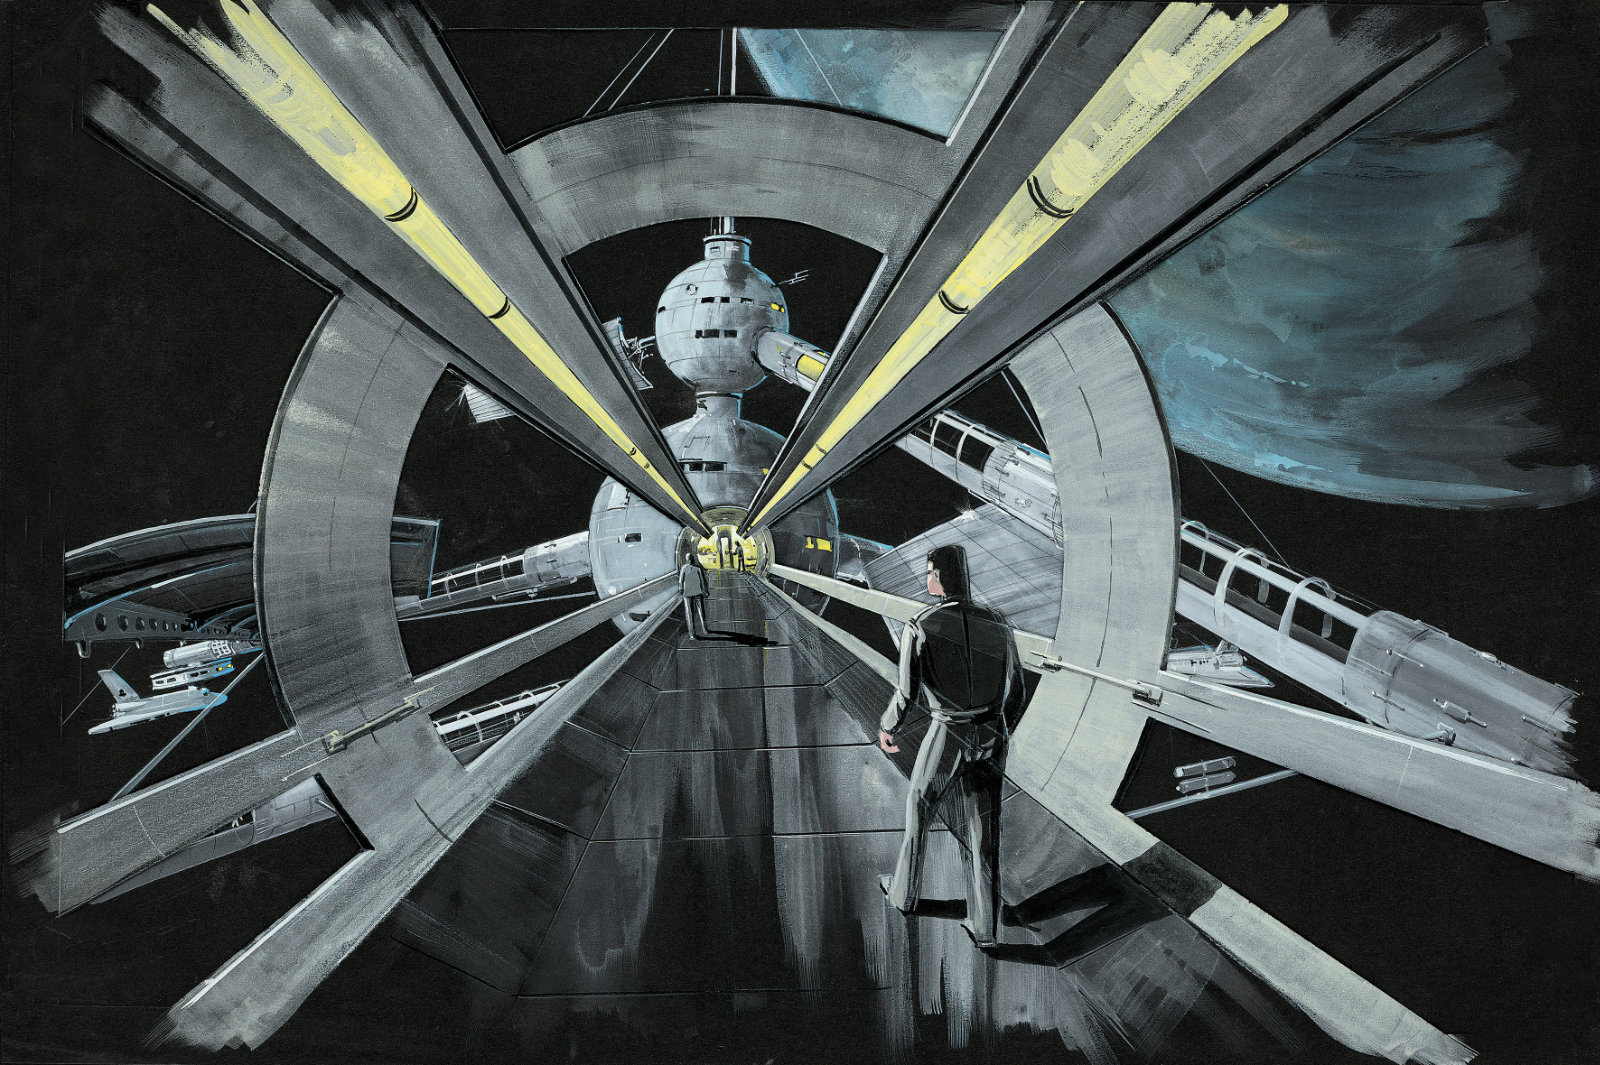 Zeichnung Raumschiff aus James Bond Film